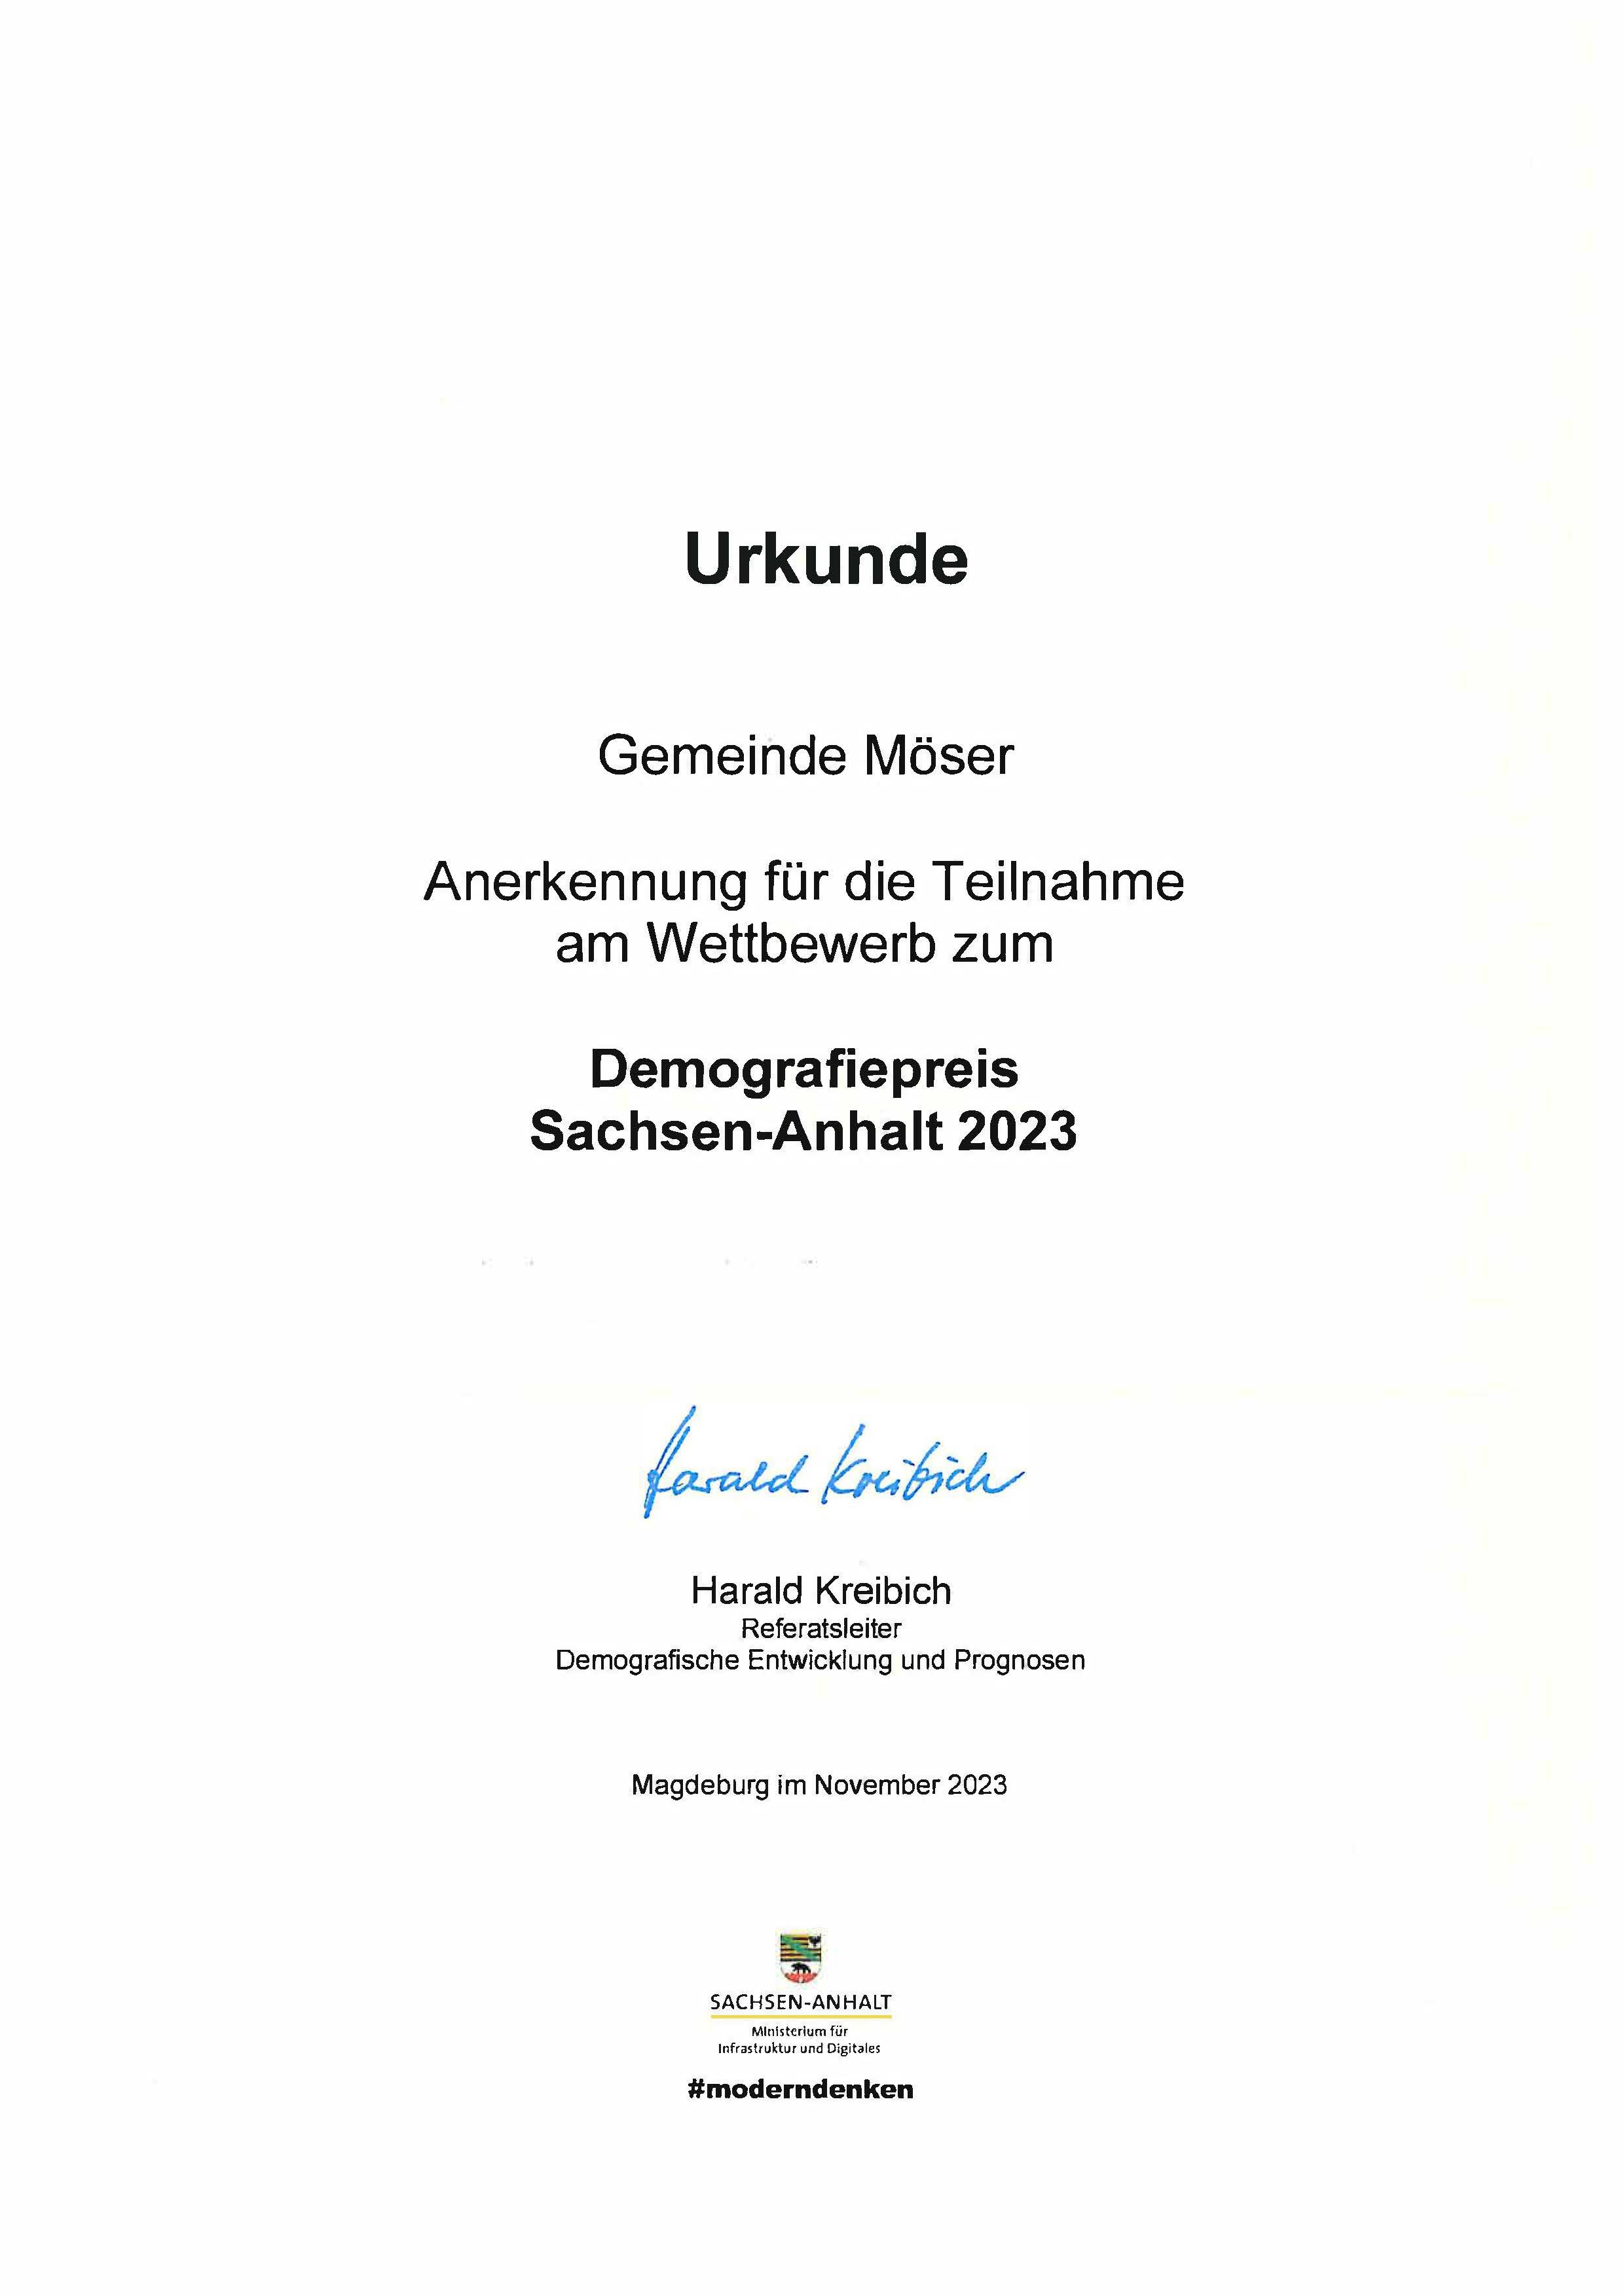 Urkunde für die Teilnahme am Wettbewerb zum Demografiepreis Sachsen-Anhalt 2023